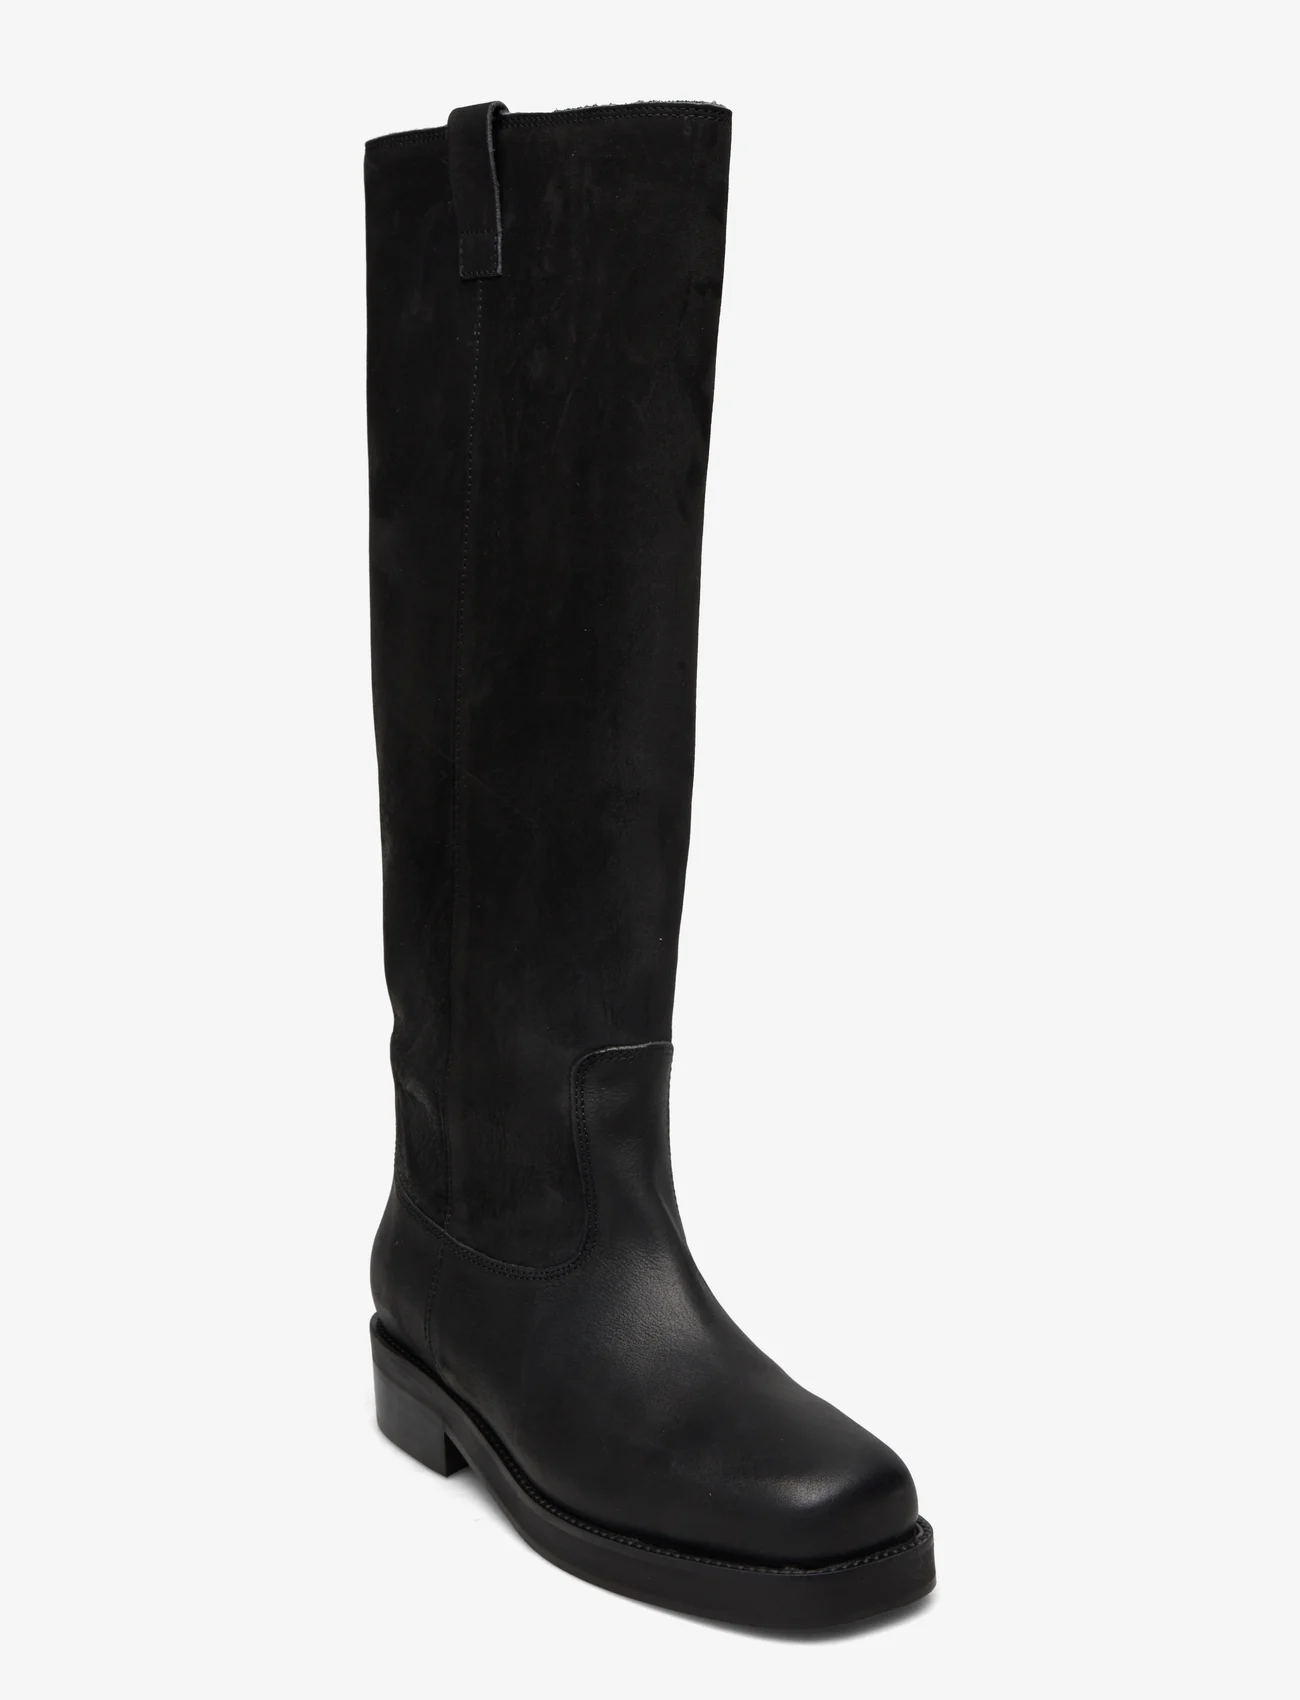 Billi Bi - Long Boots - kniehohe stiefel - black nubuk - 0